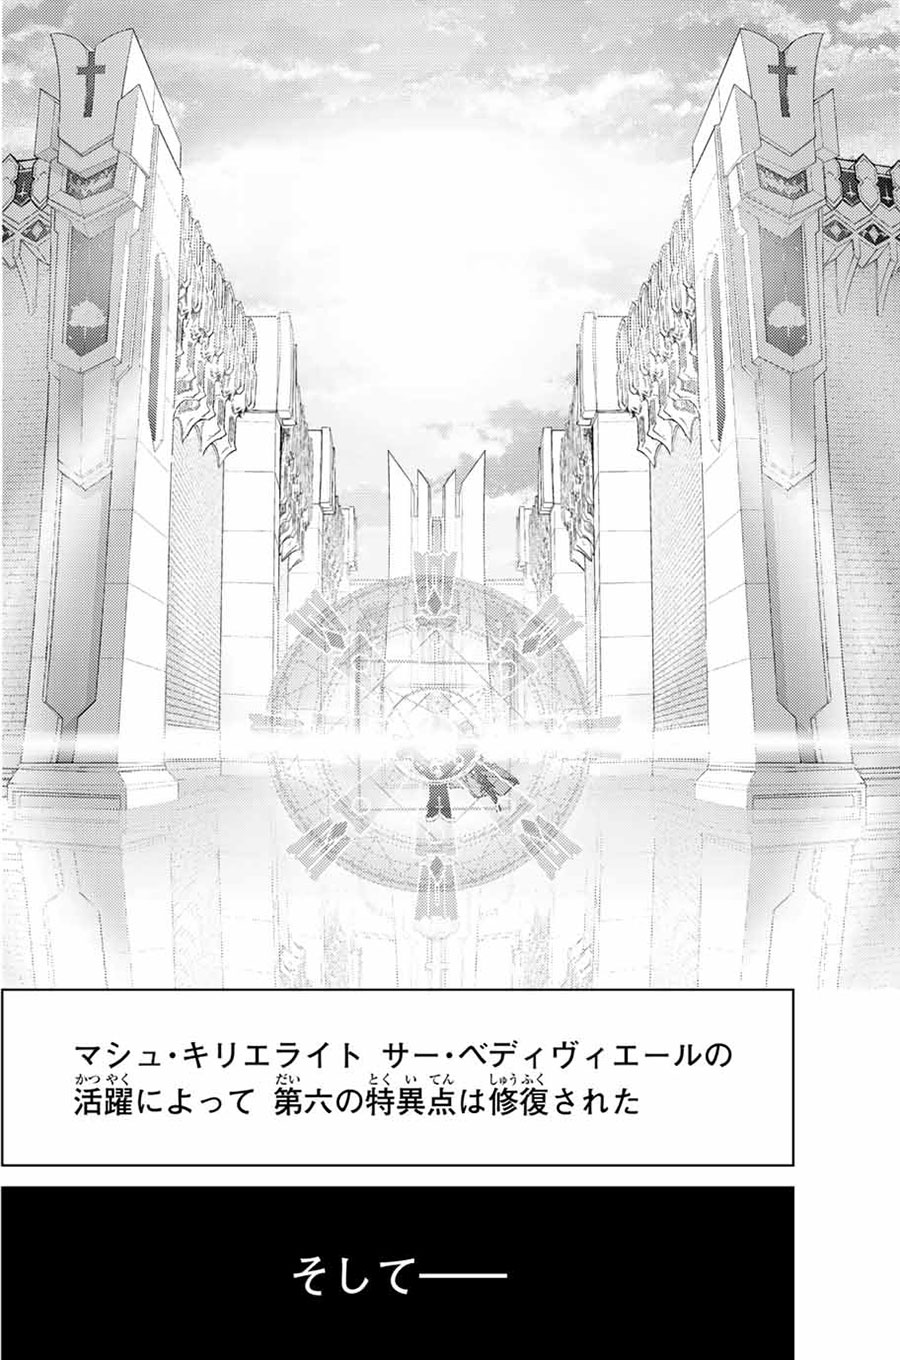 『Fate／Grand Order』